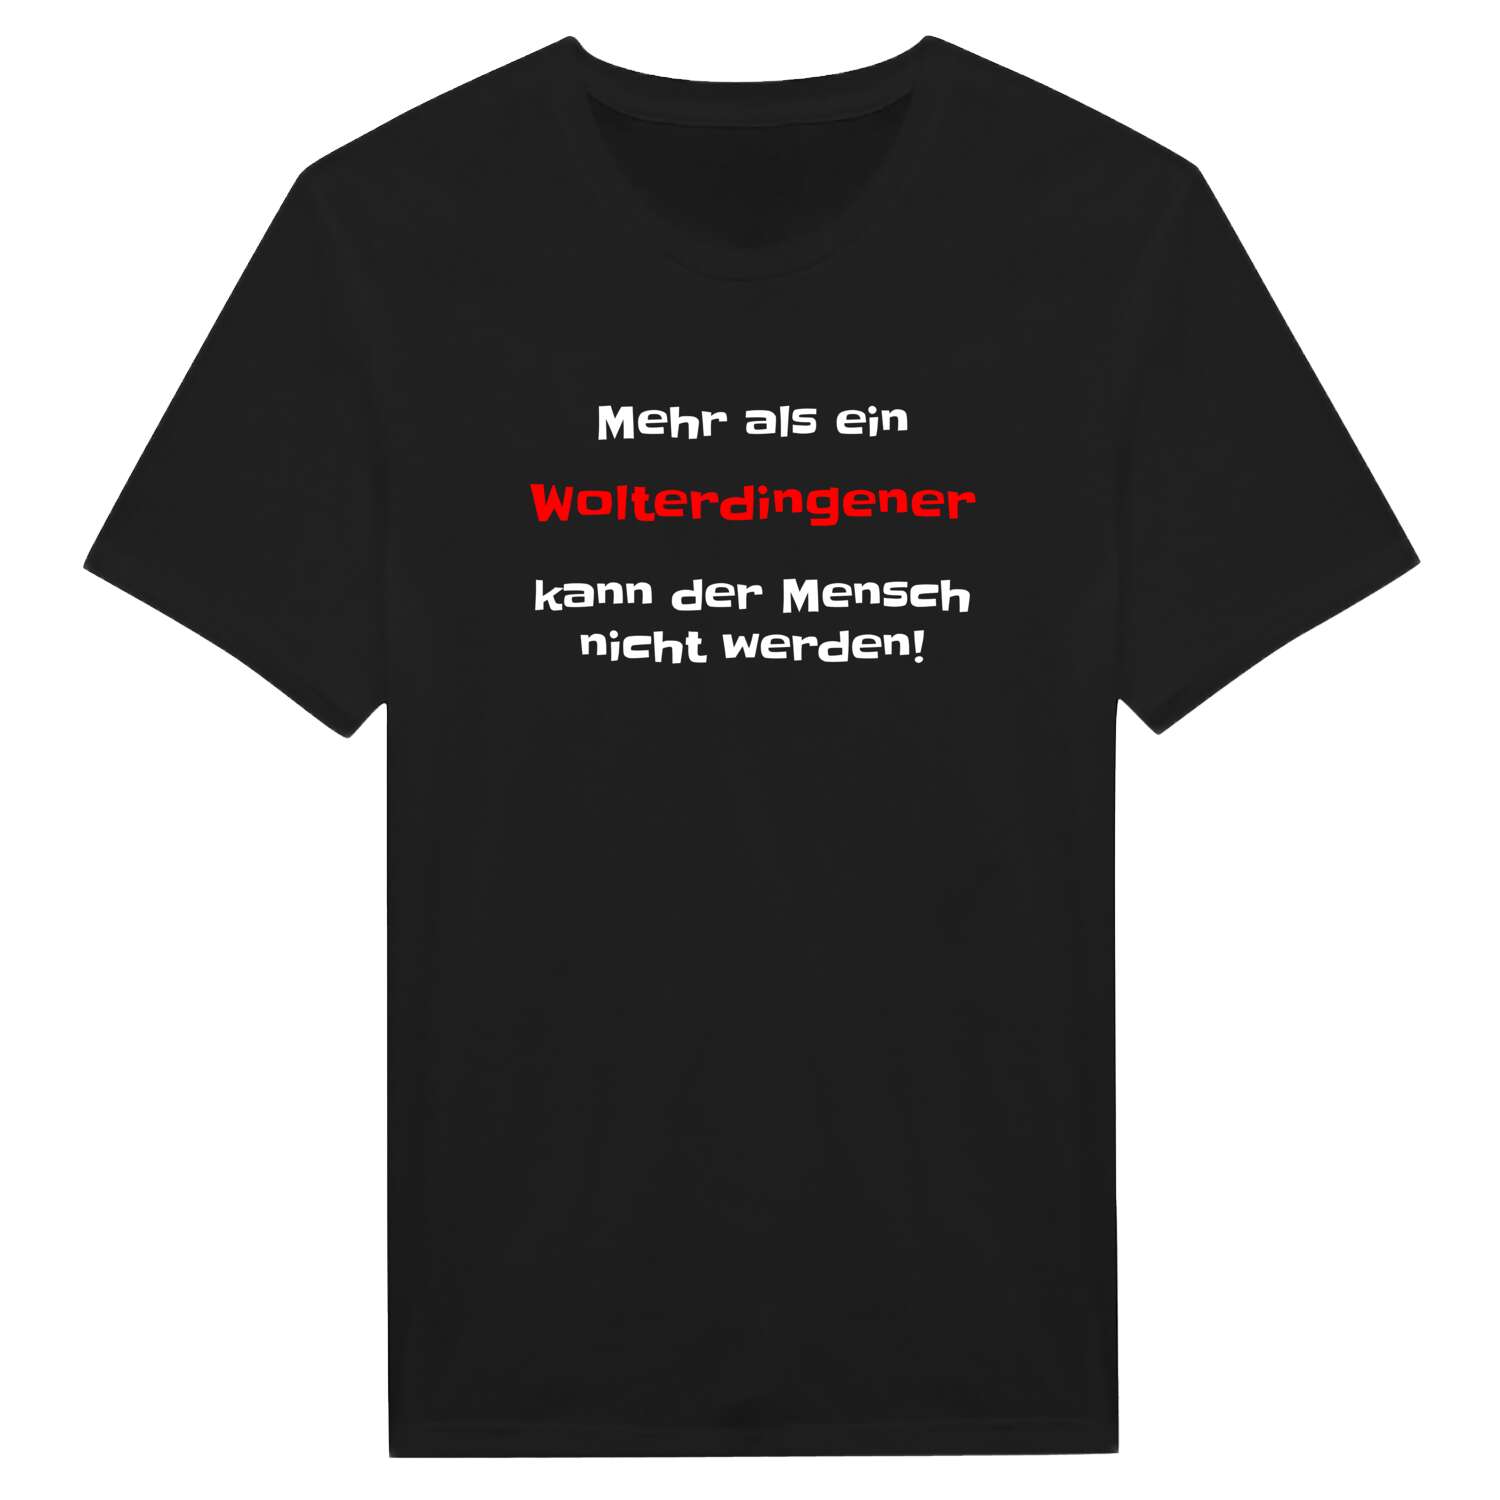 Wolterdingen T-Shirt »Mehr als ein«